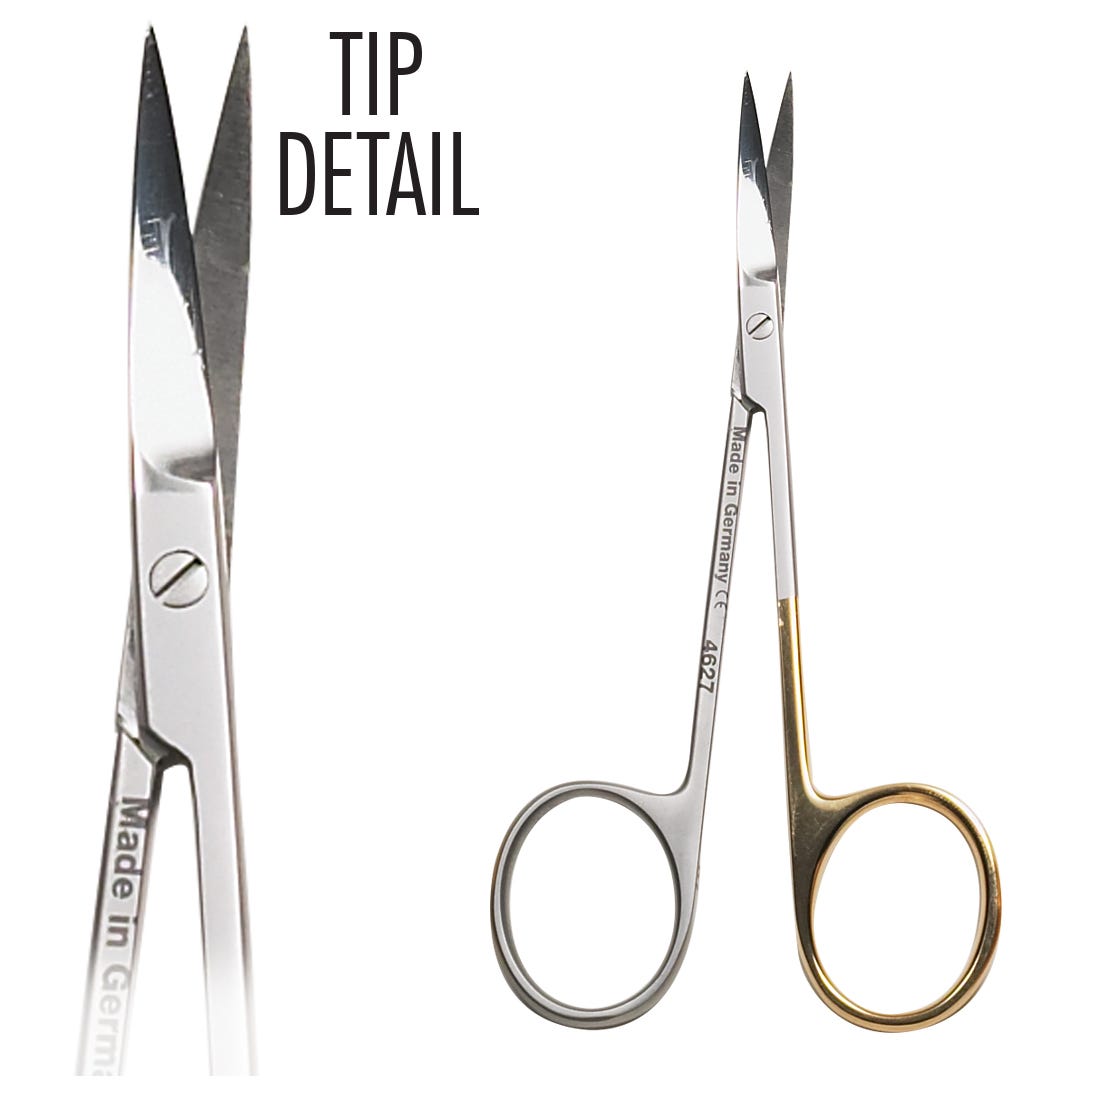 ACE Iris Scissors, curved, delicate, super cut tips